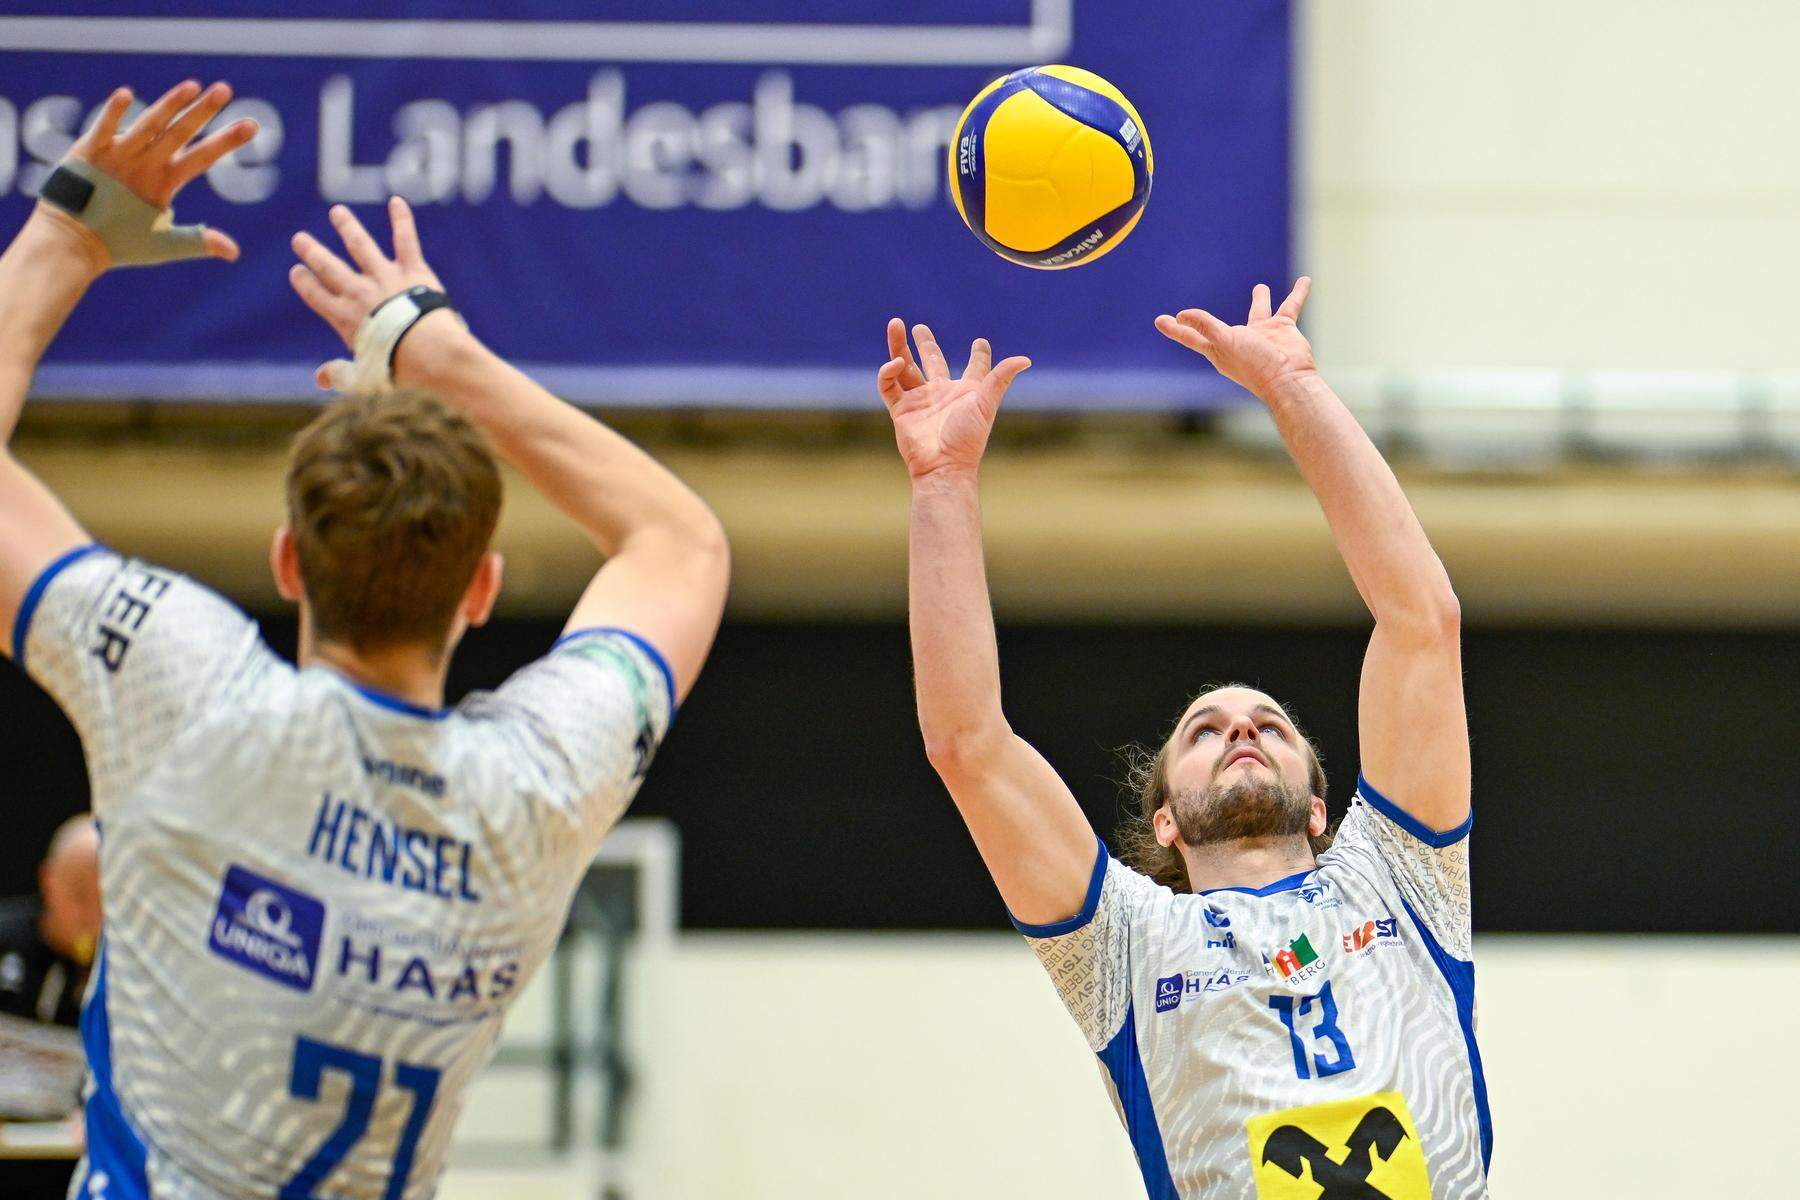 Volleyball: Hartberg gegen Tirol: In zwei Jahren von der Relegation ins Finale